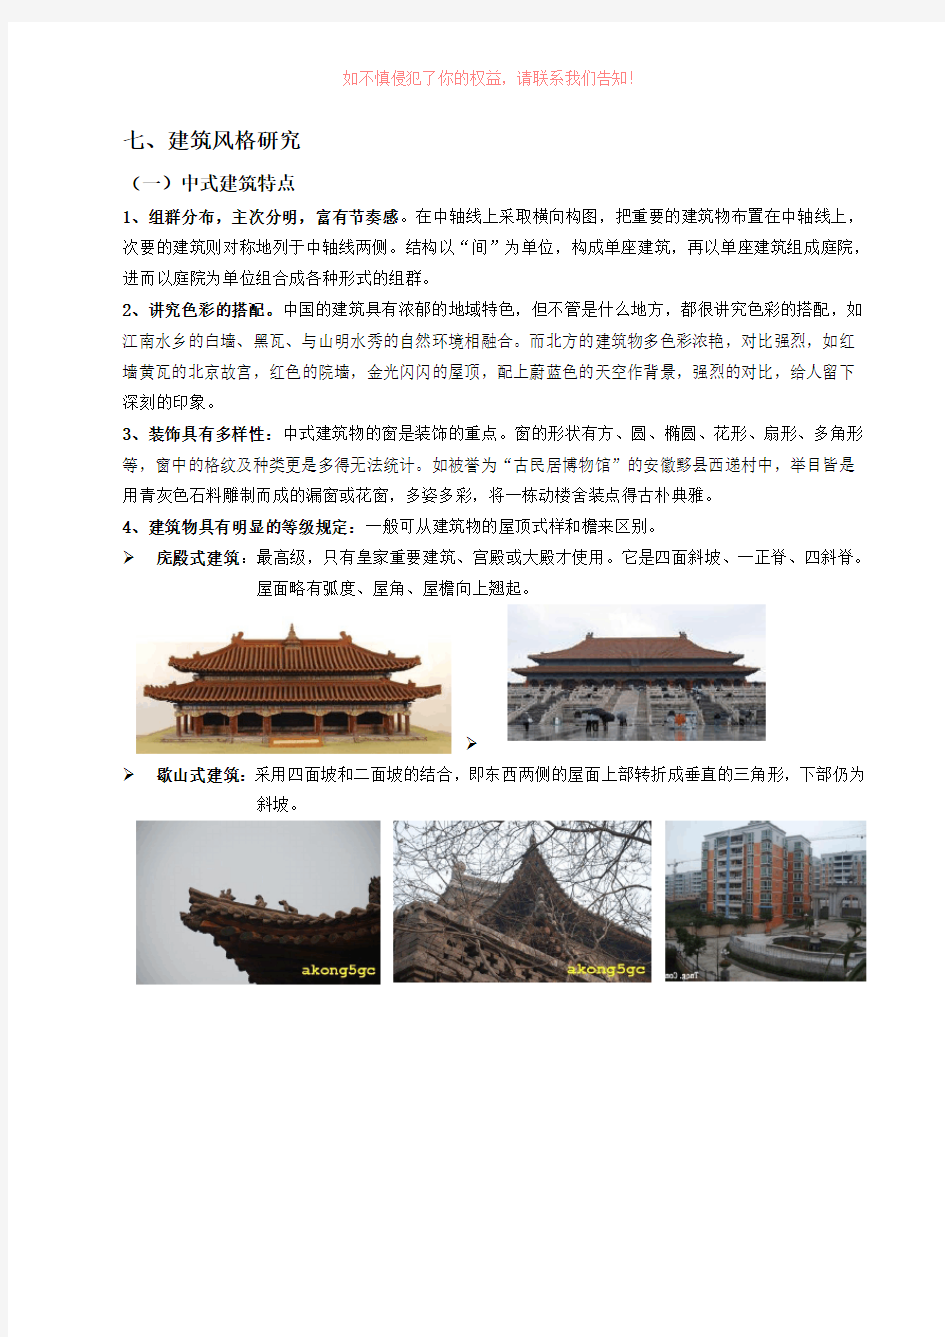 中西式建筑风格分类详细介绍